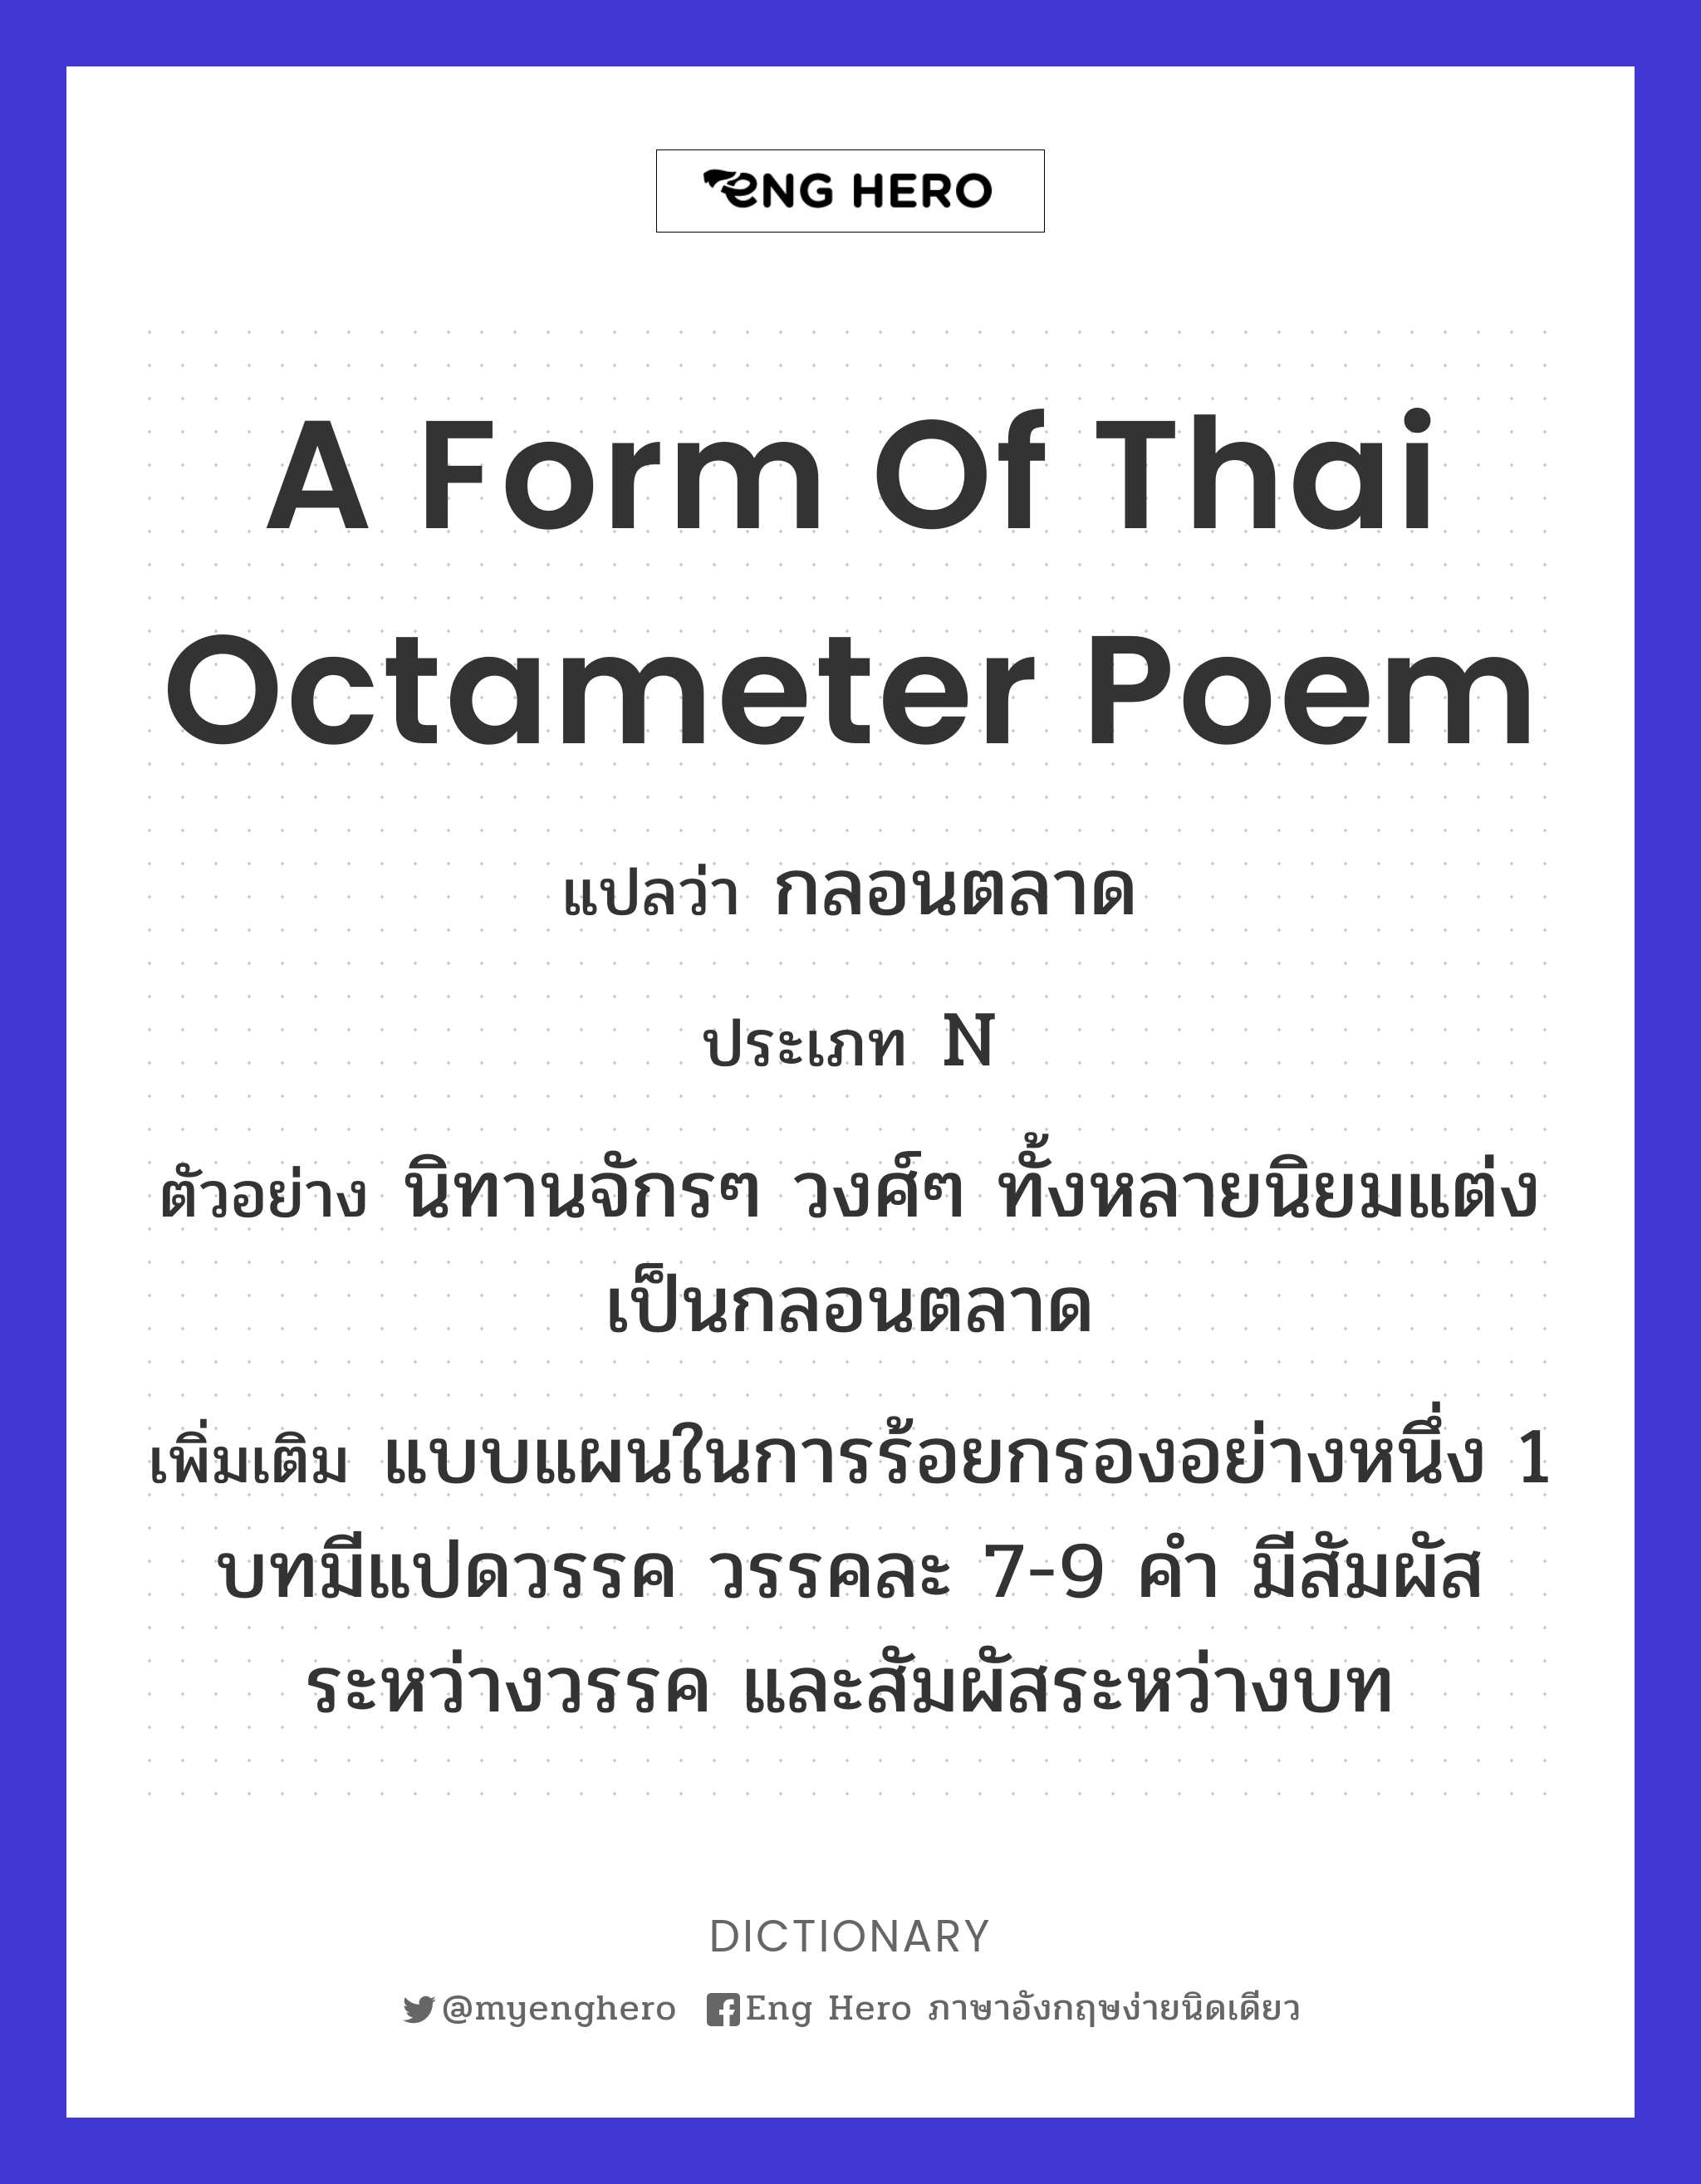 a form of Thai octameter poem